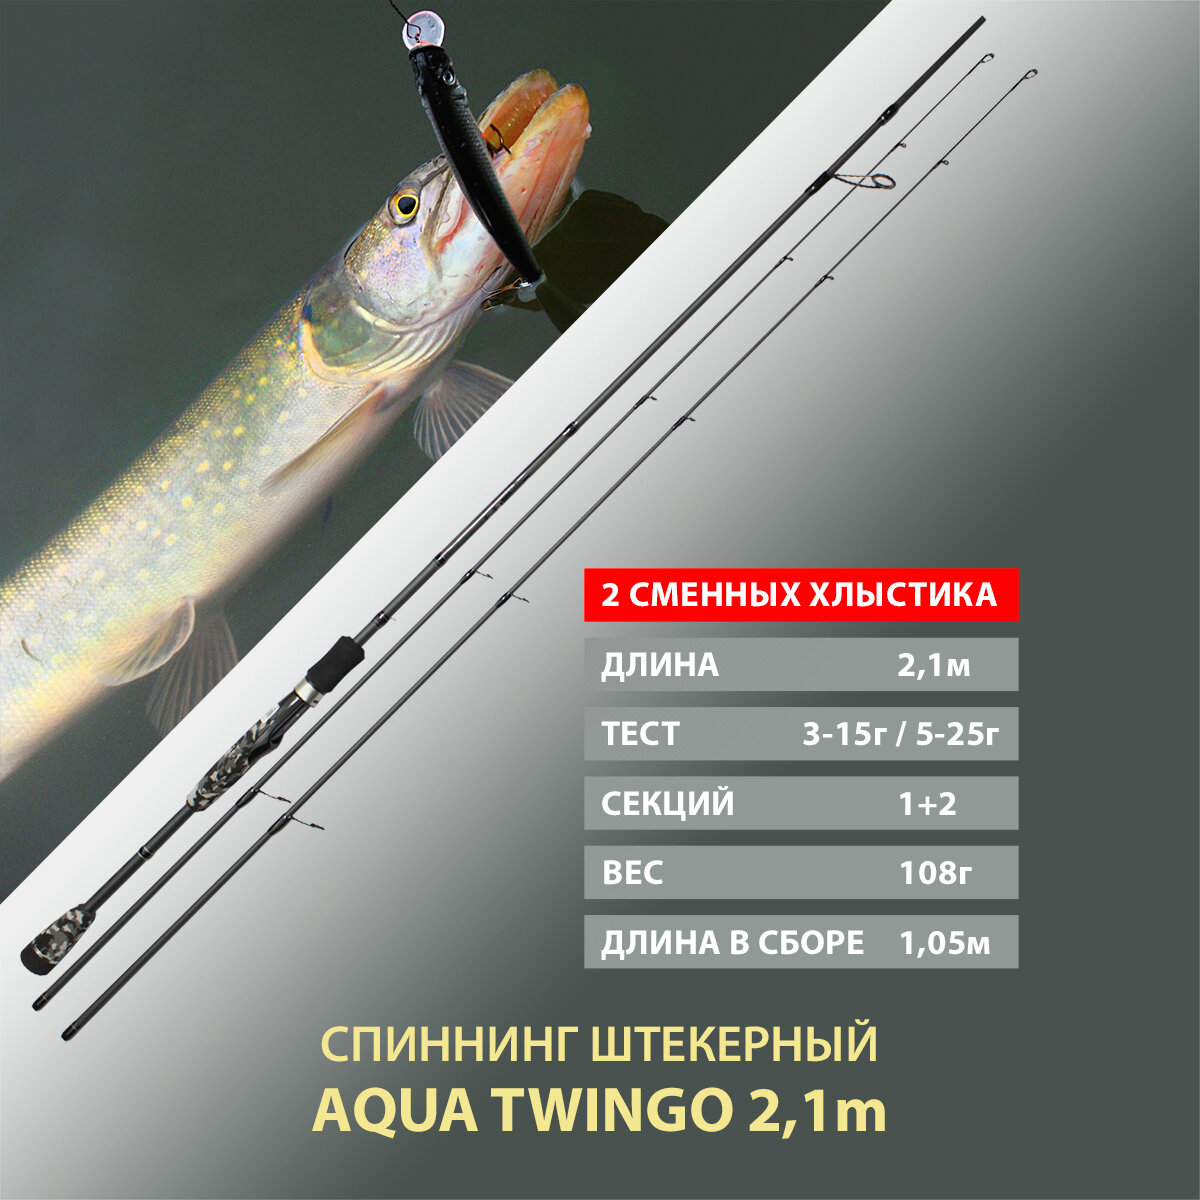 Спиннинг штекерный, с двумя хлыстами AQUA Twingo 2.10m, тест 03-15g/05-25g